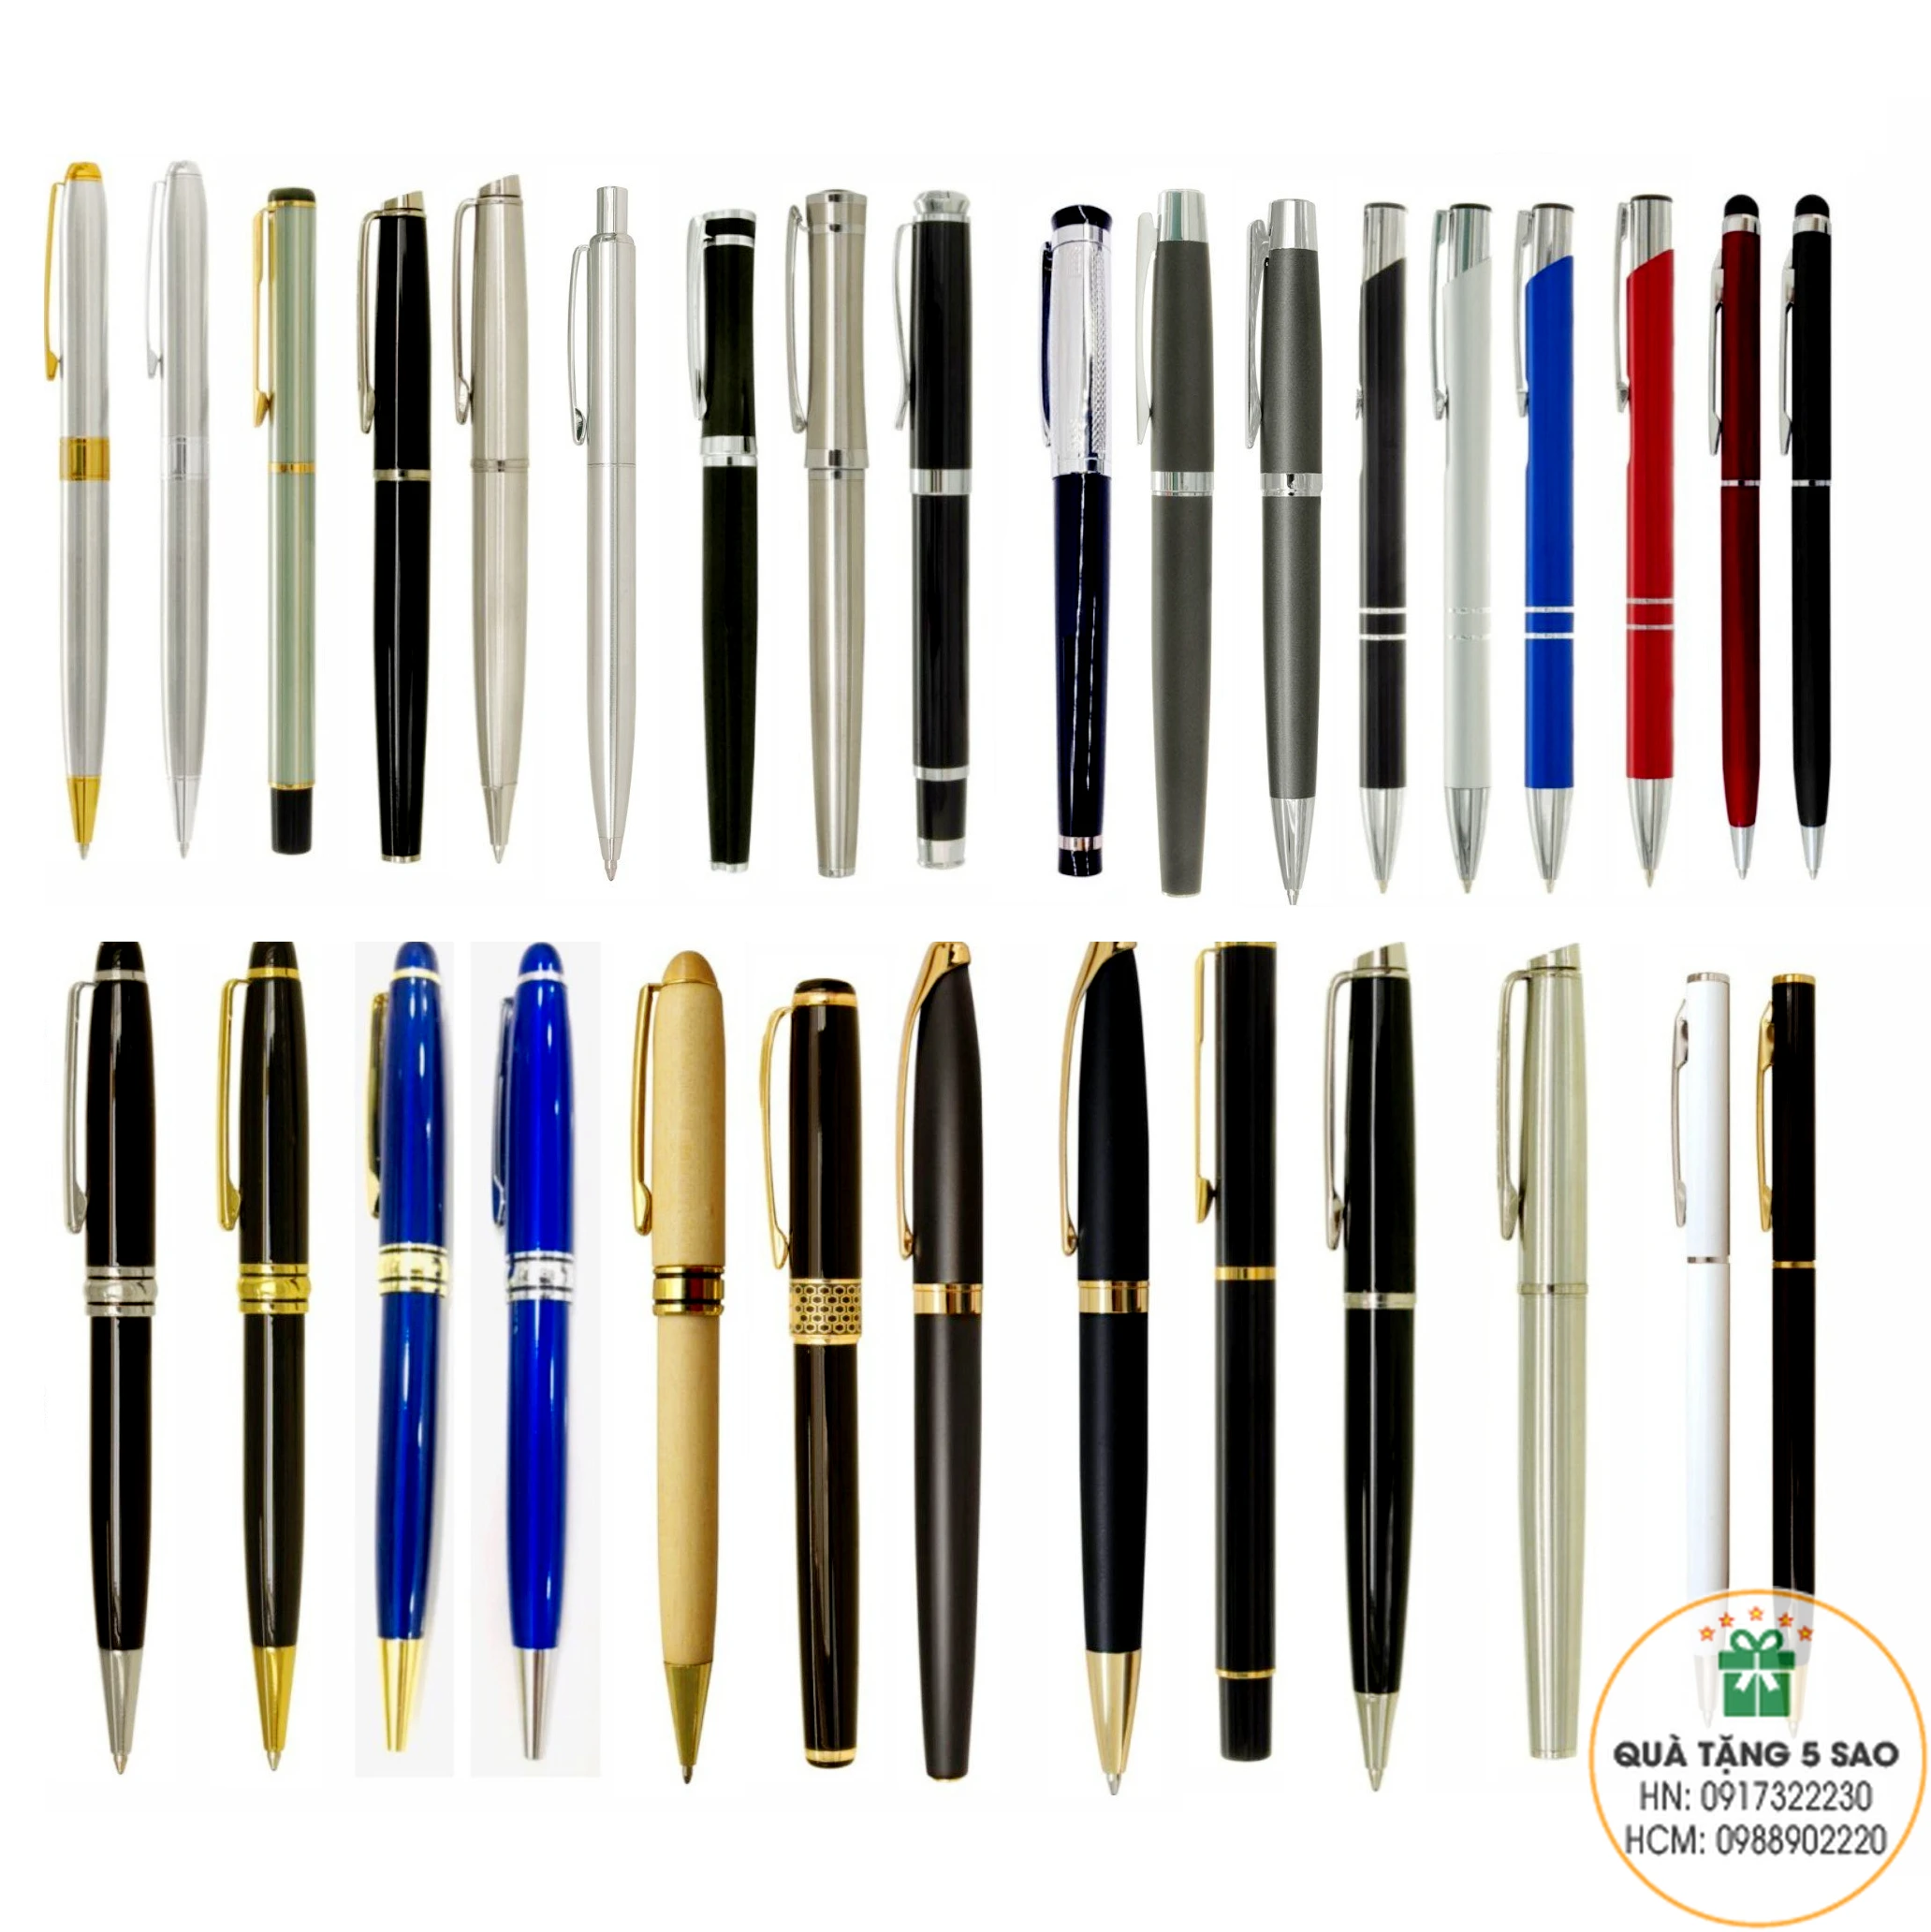 Tổng hợp các loại bút ký chất lượng cao, có sẵn tại Quà Tặng 5 Sao